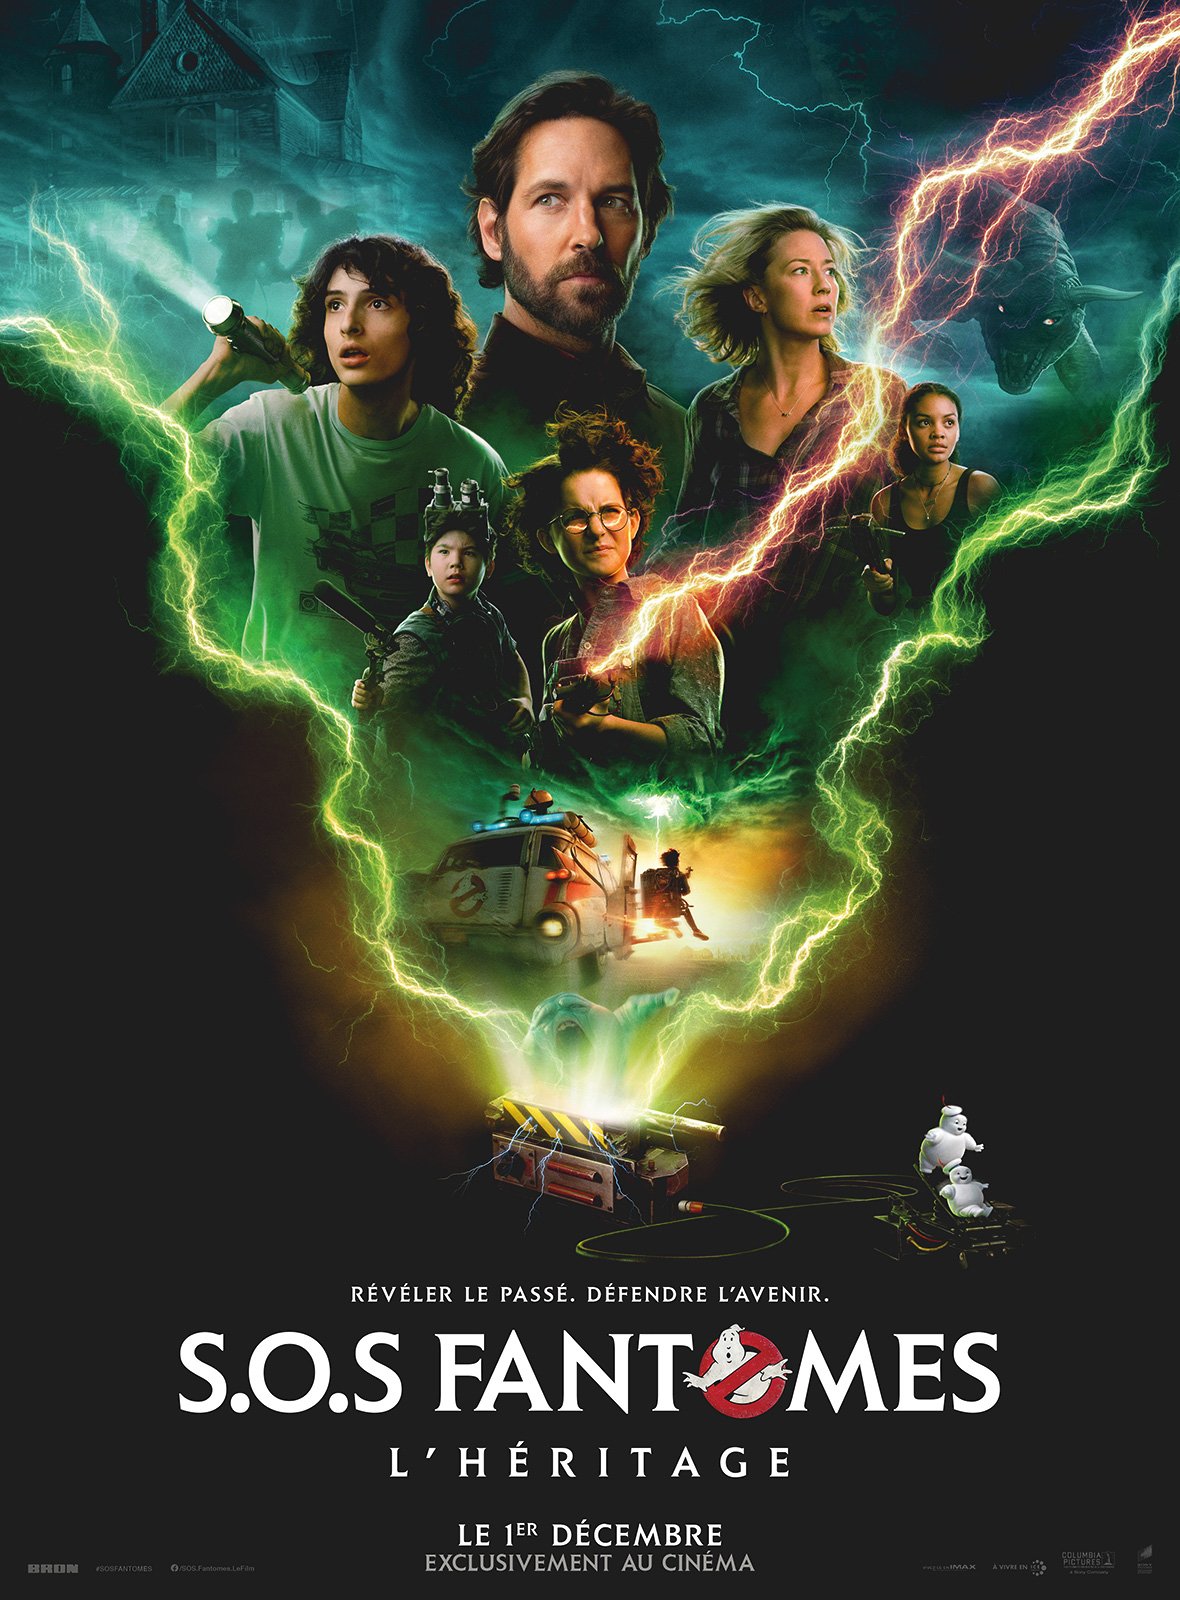 S.O.S. Fantômes : L'Héritage - film 2021 - AlloCiné